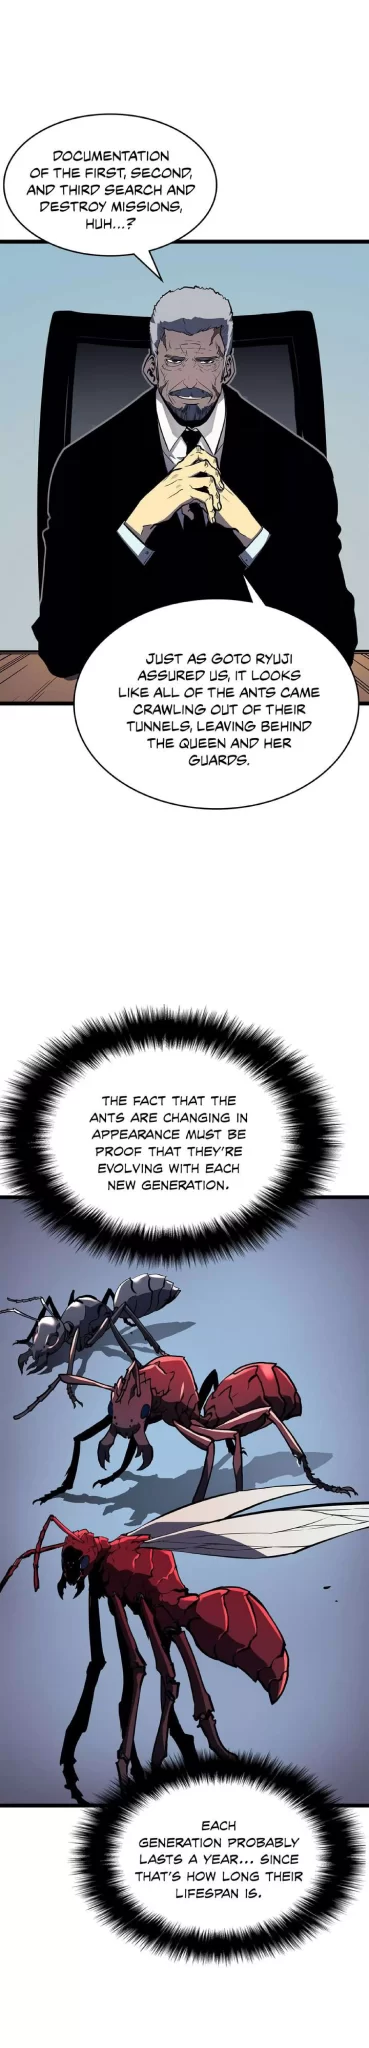 Solo Leveling Manga Manga Chapter - 88 - image 21